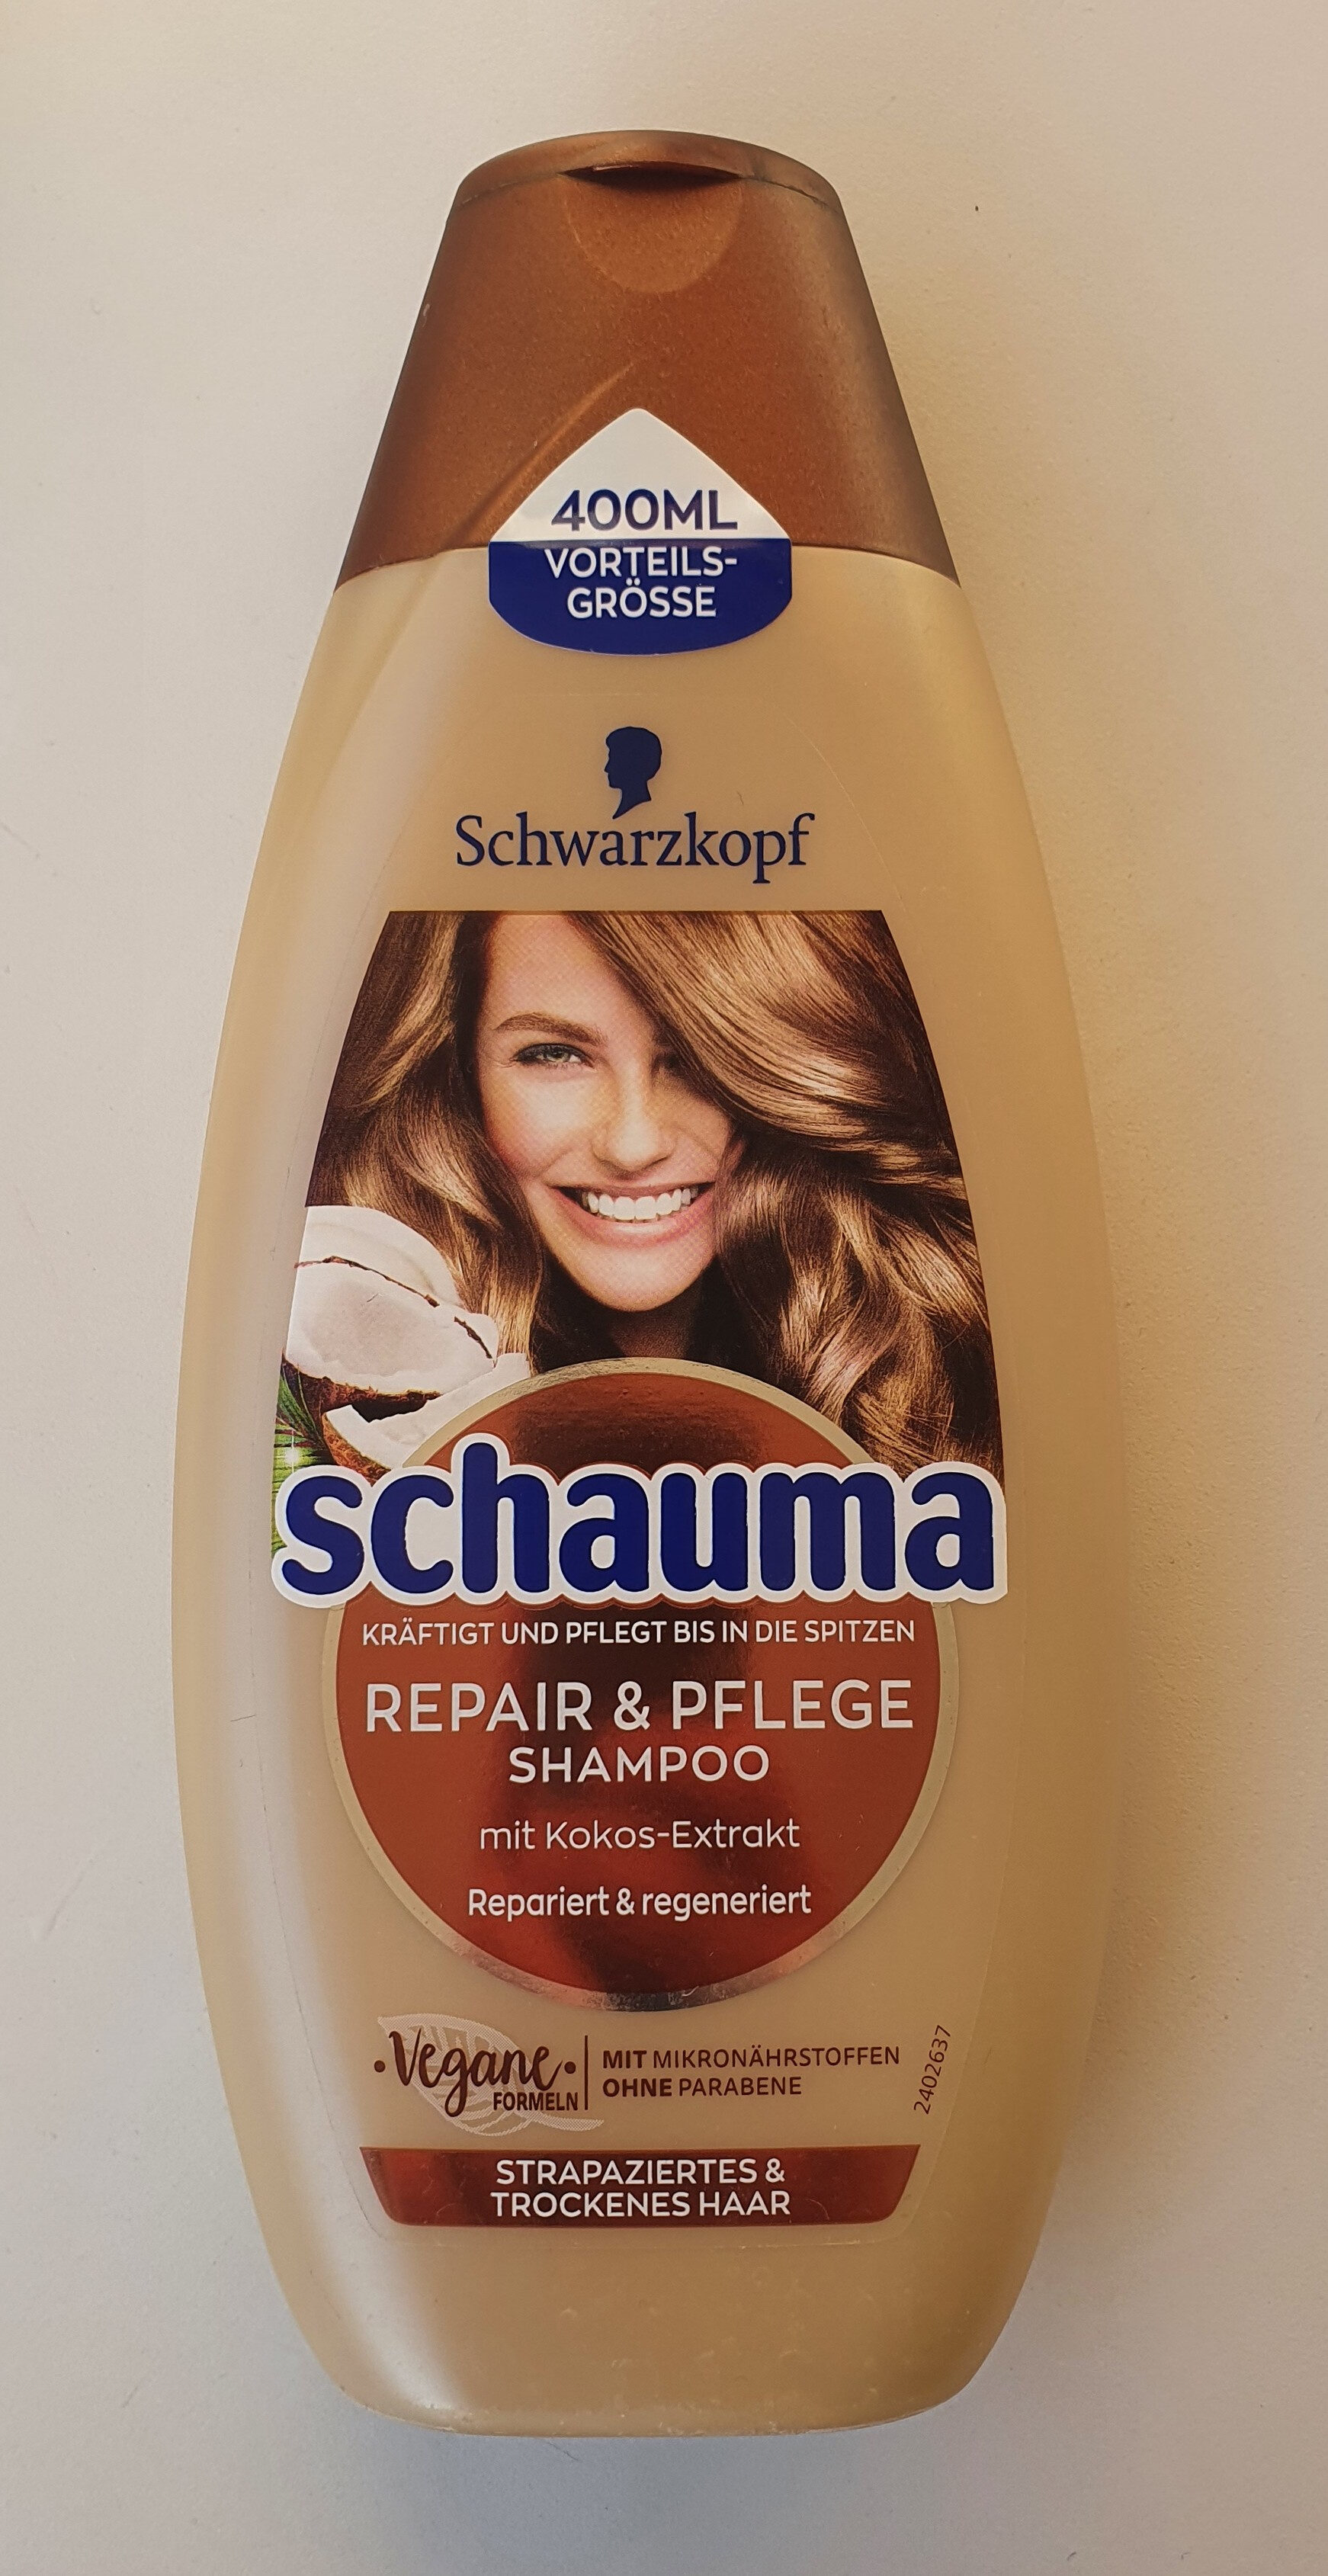 Repair & Pflege Shampoo mit Kokos-Extrakt - Produto - de